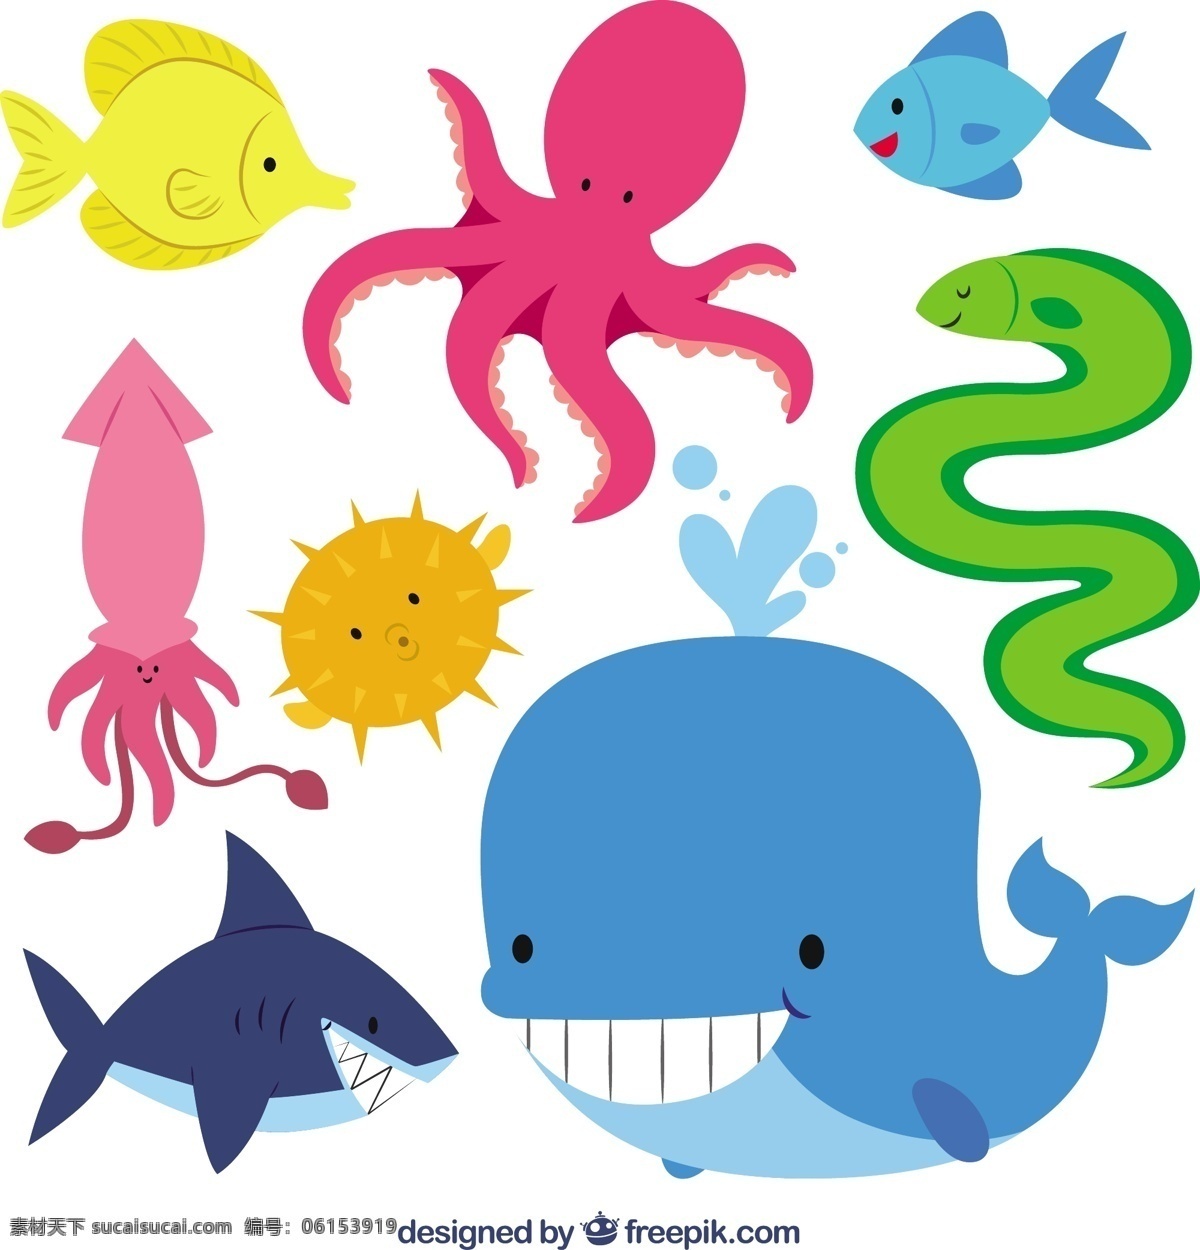 可爱 海洋 动物 可爱的插图 鲨鱼 章鱼 鲸鱼 可爱的动物 鱿鱼